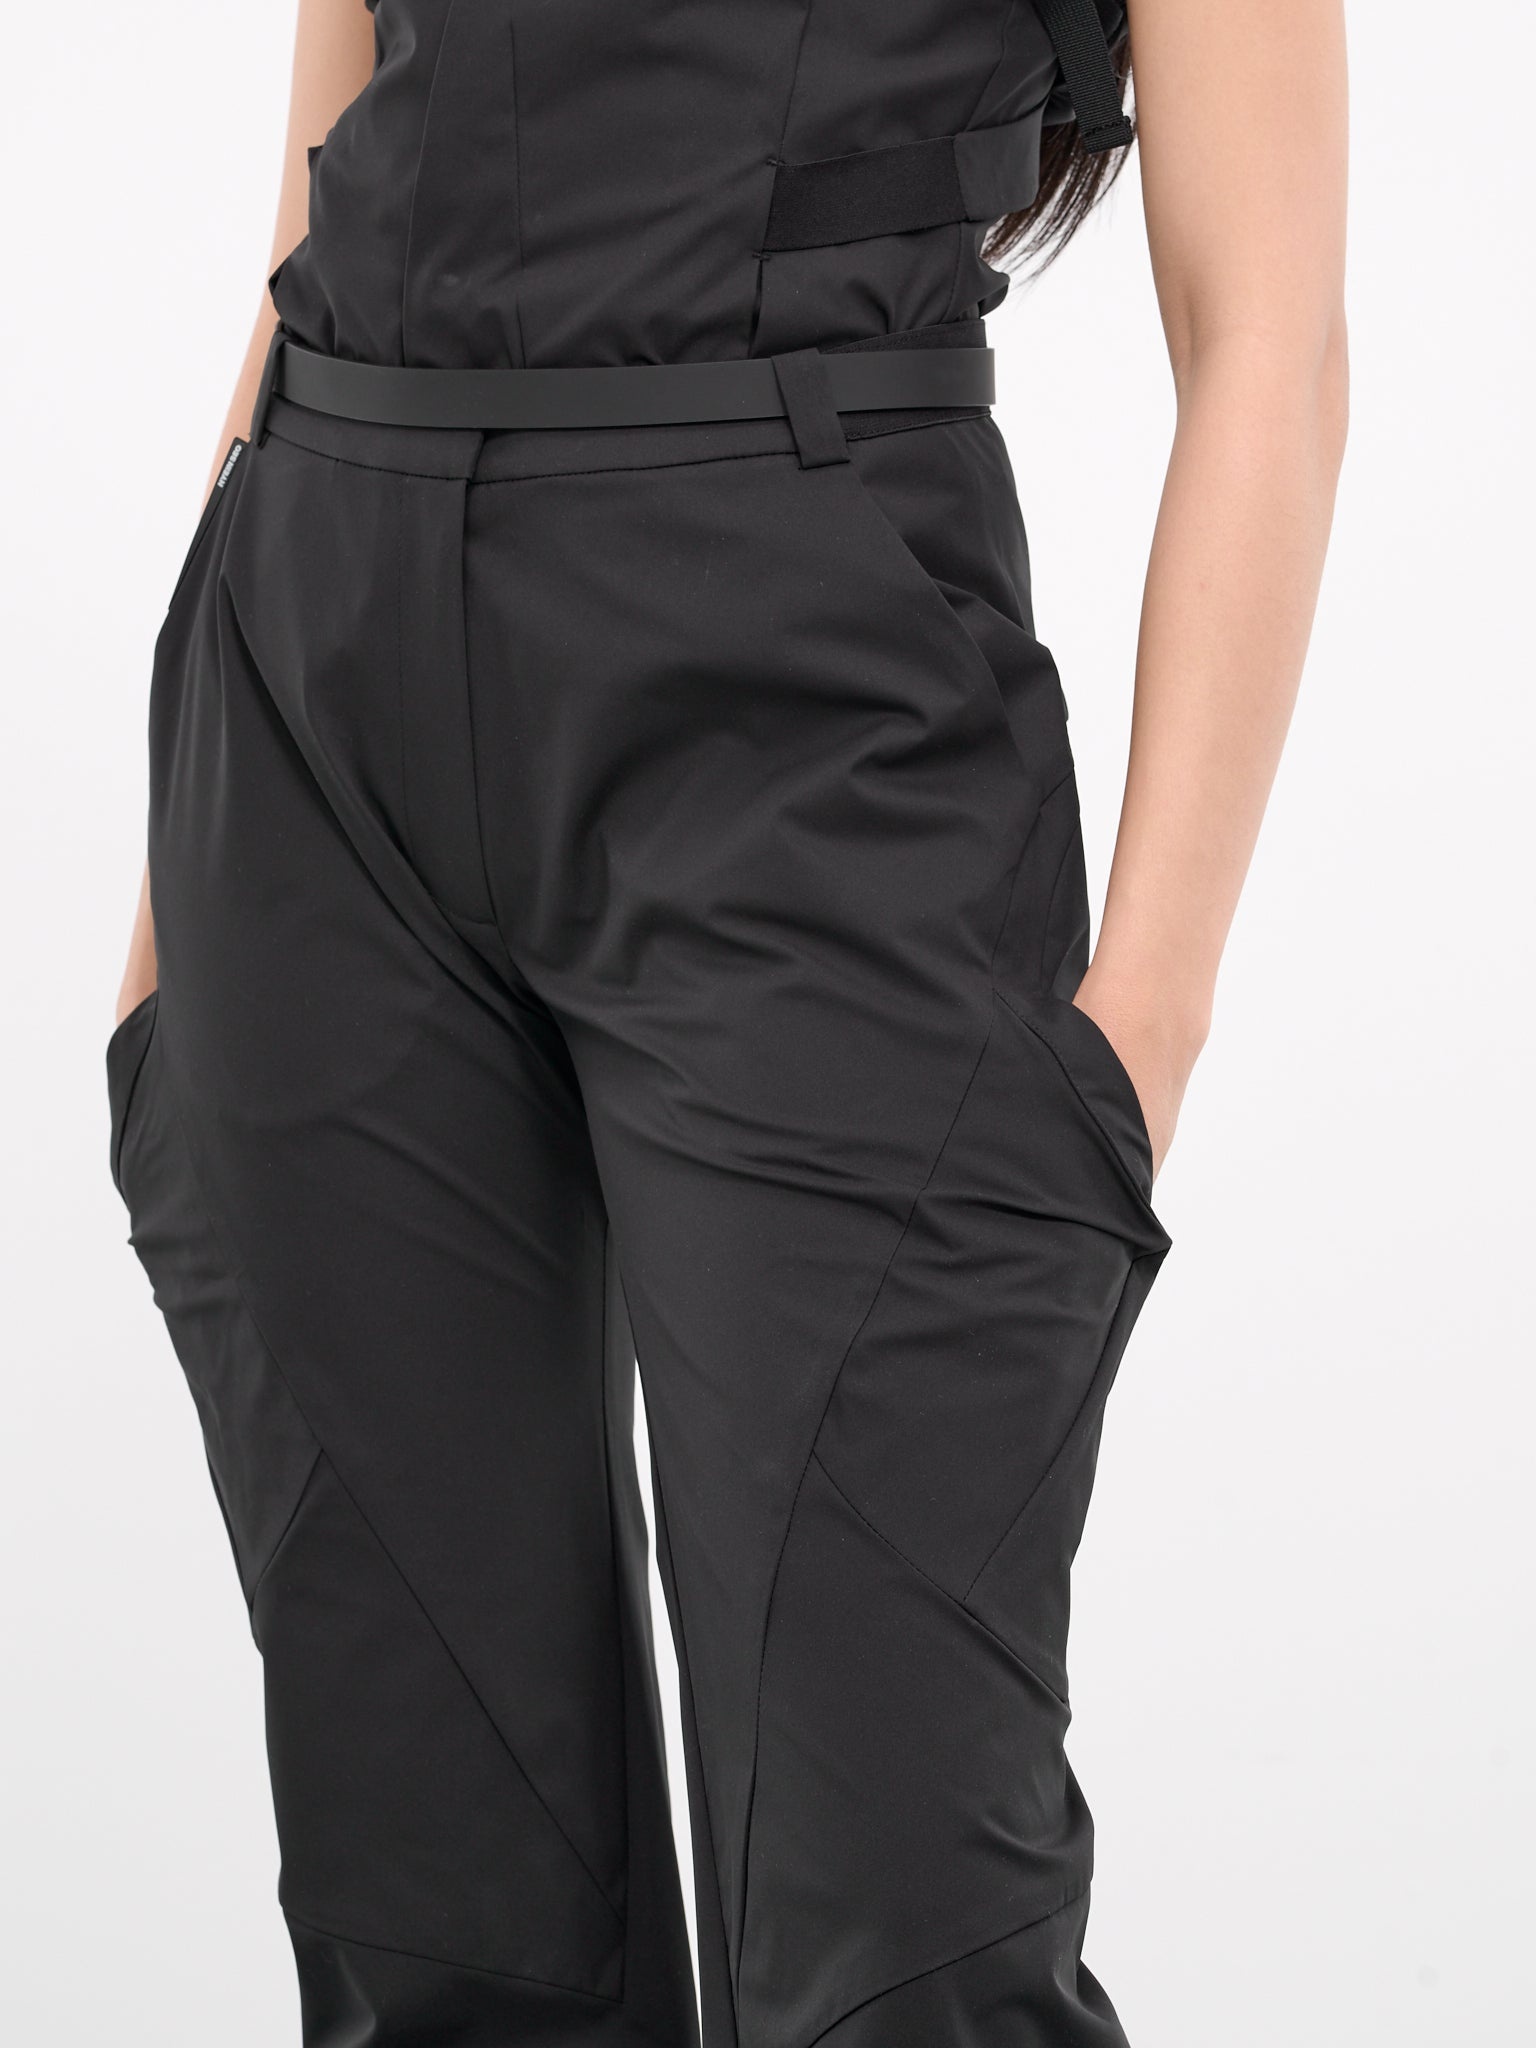 Belted Pocket Pants - 5